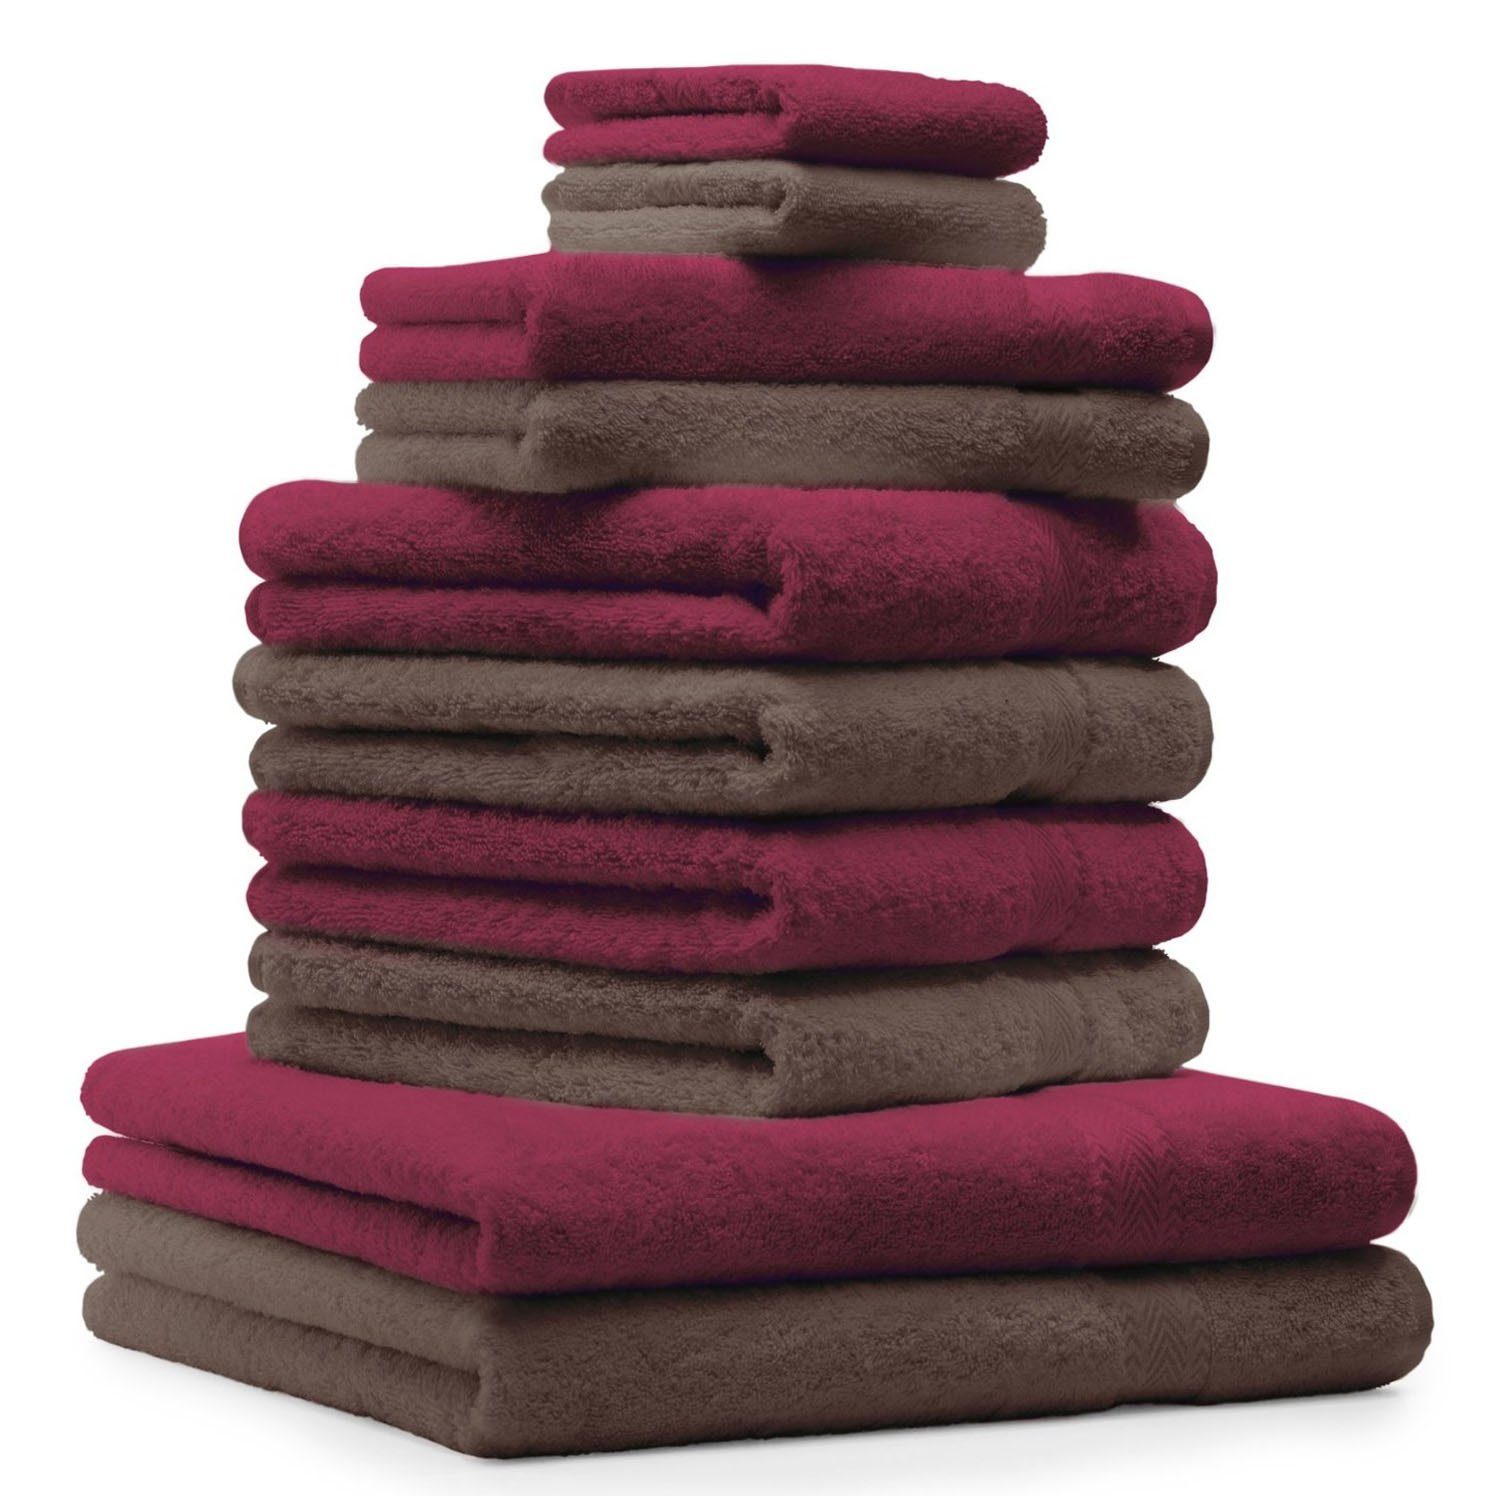 Betz Handtuch Set 10-TLG. Handtuch-Set Classic Farbe nussbraun und dunkelrot, 100% Baumwolle